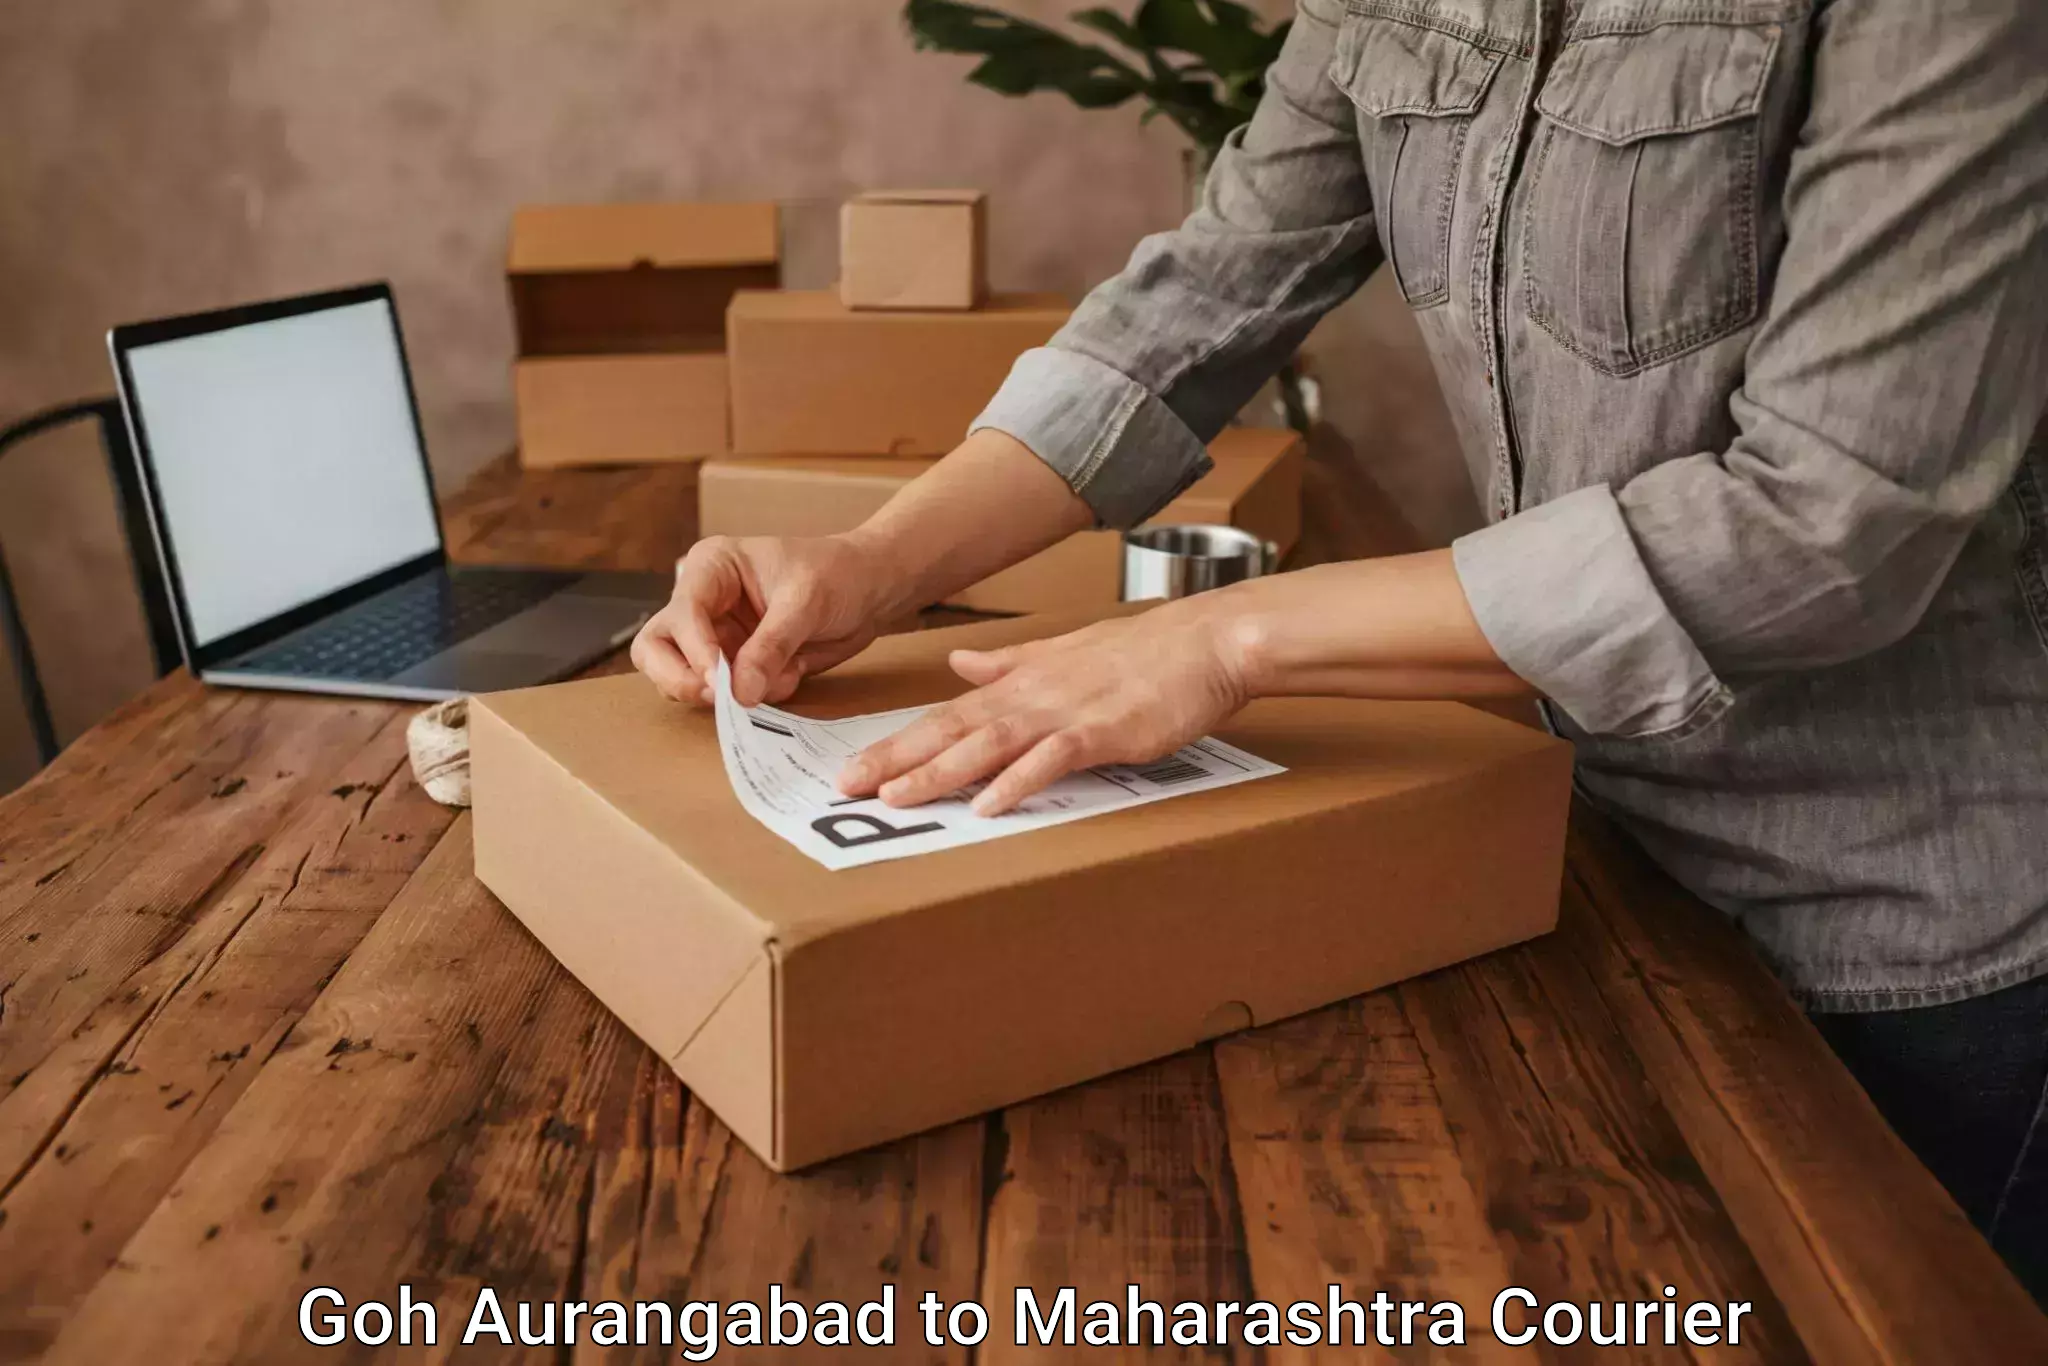 Professional moving assistance Goh Aurangabad to Maharashtra